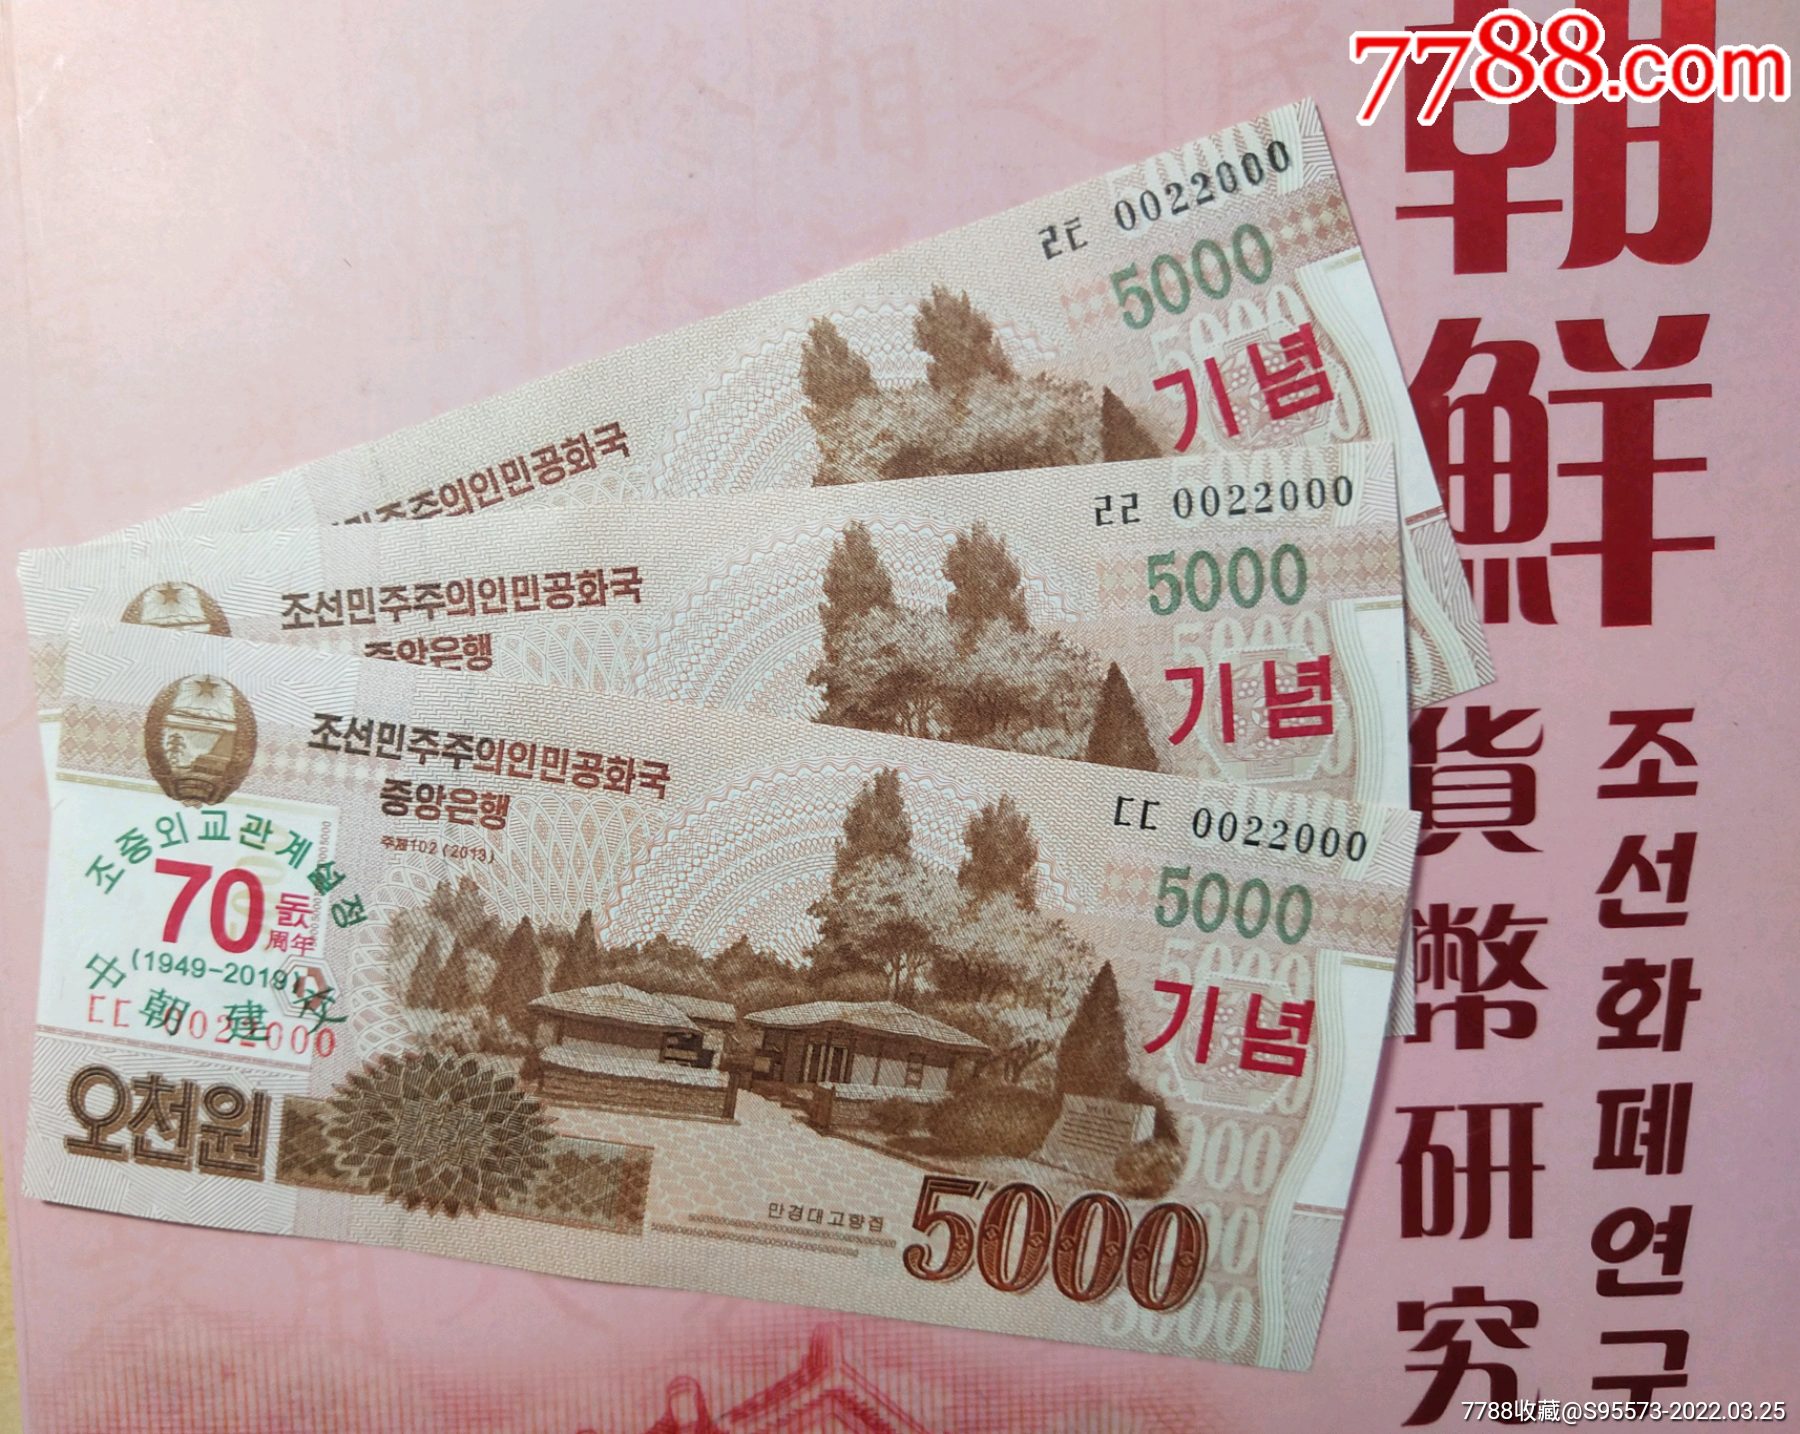 中国朝鲜建交70周年纪念钞全同豹子号三张2019年5000元全新